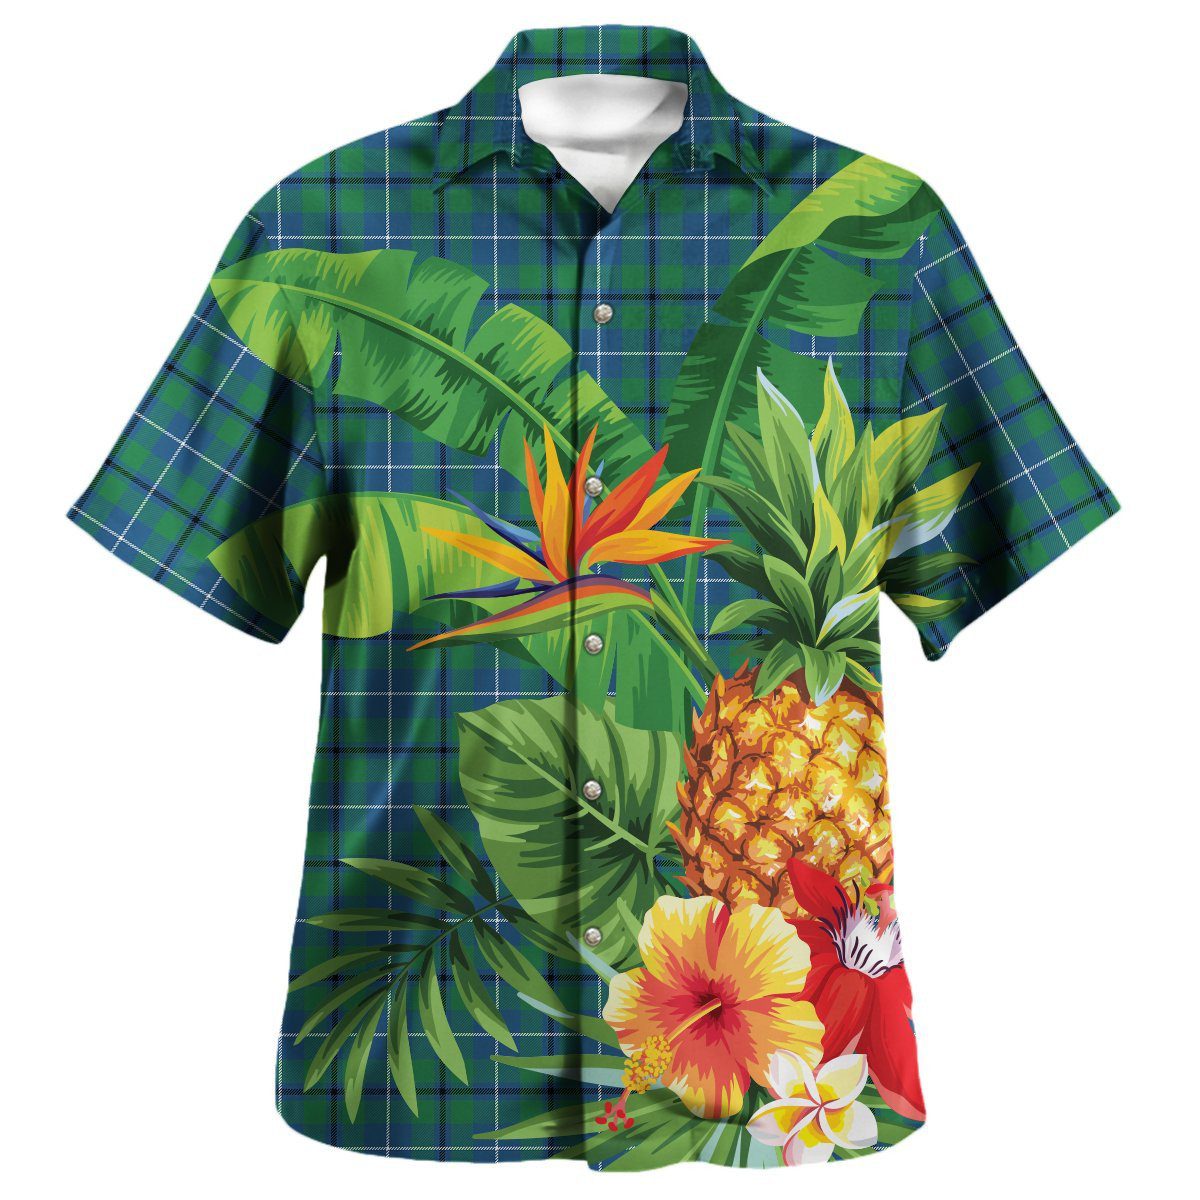 Douglas Ancient Tartan Aloha Shirt version 2